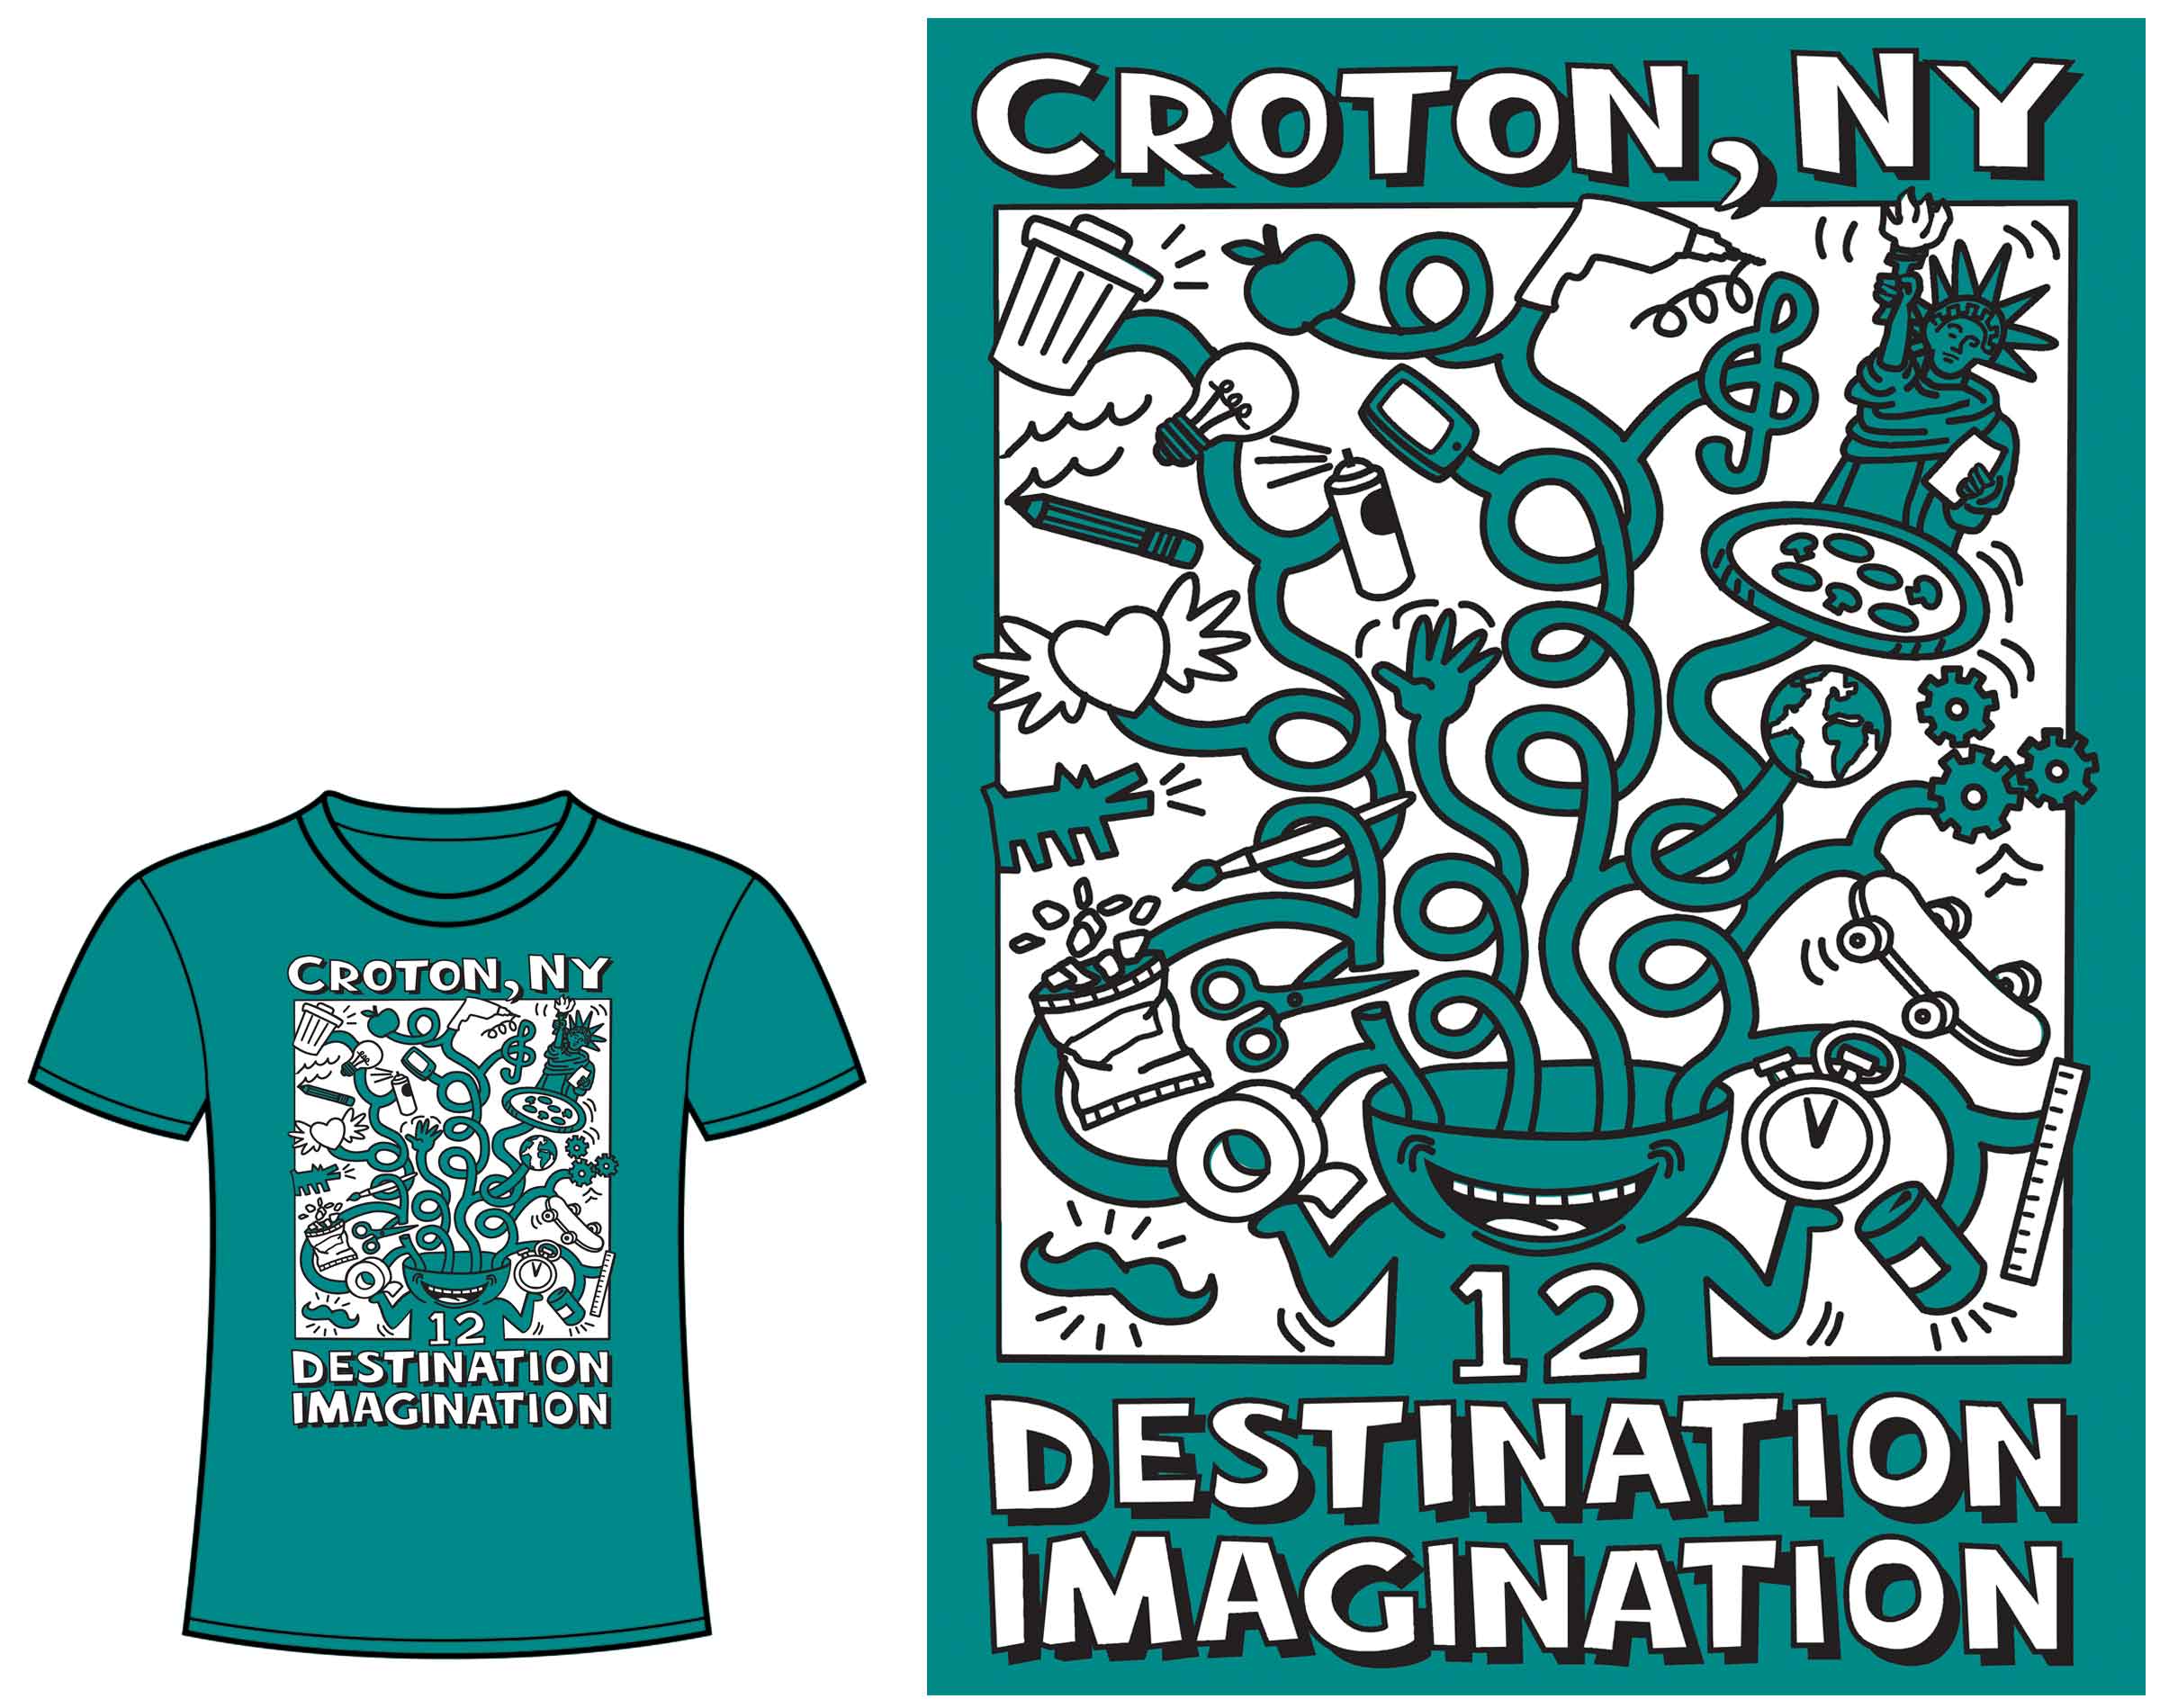 illustration-destination-imagination-tshirt-wertheim-design.jpg